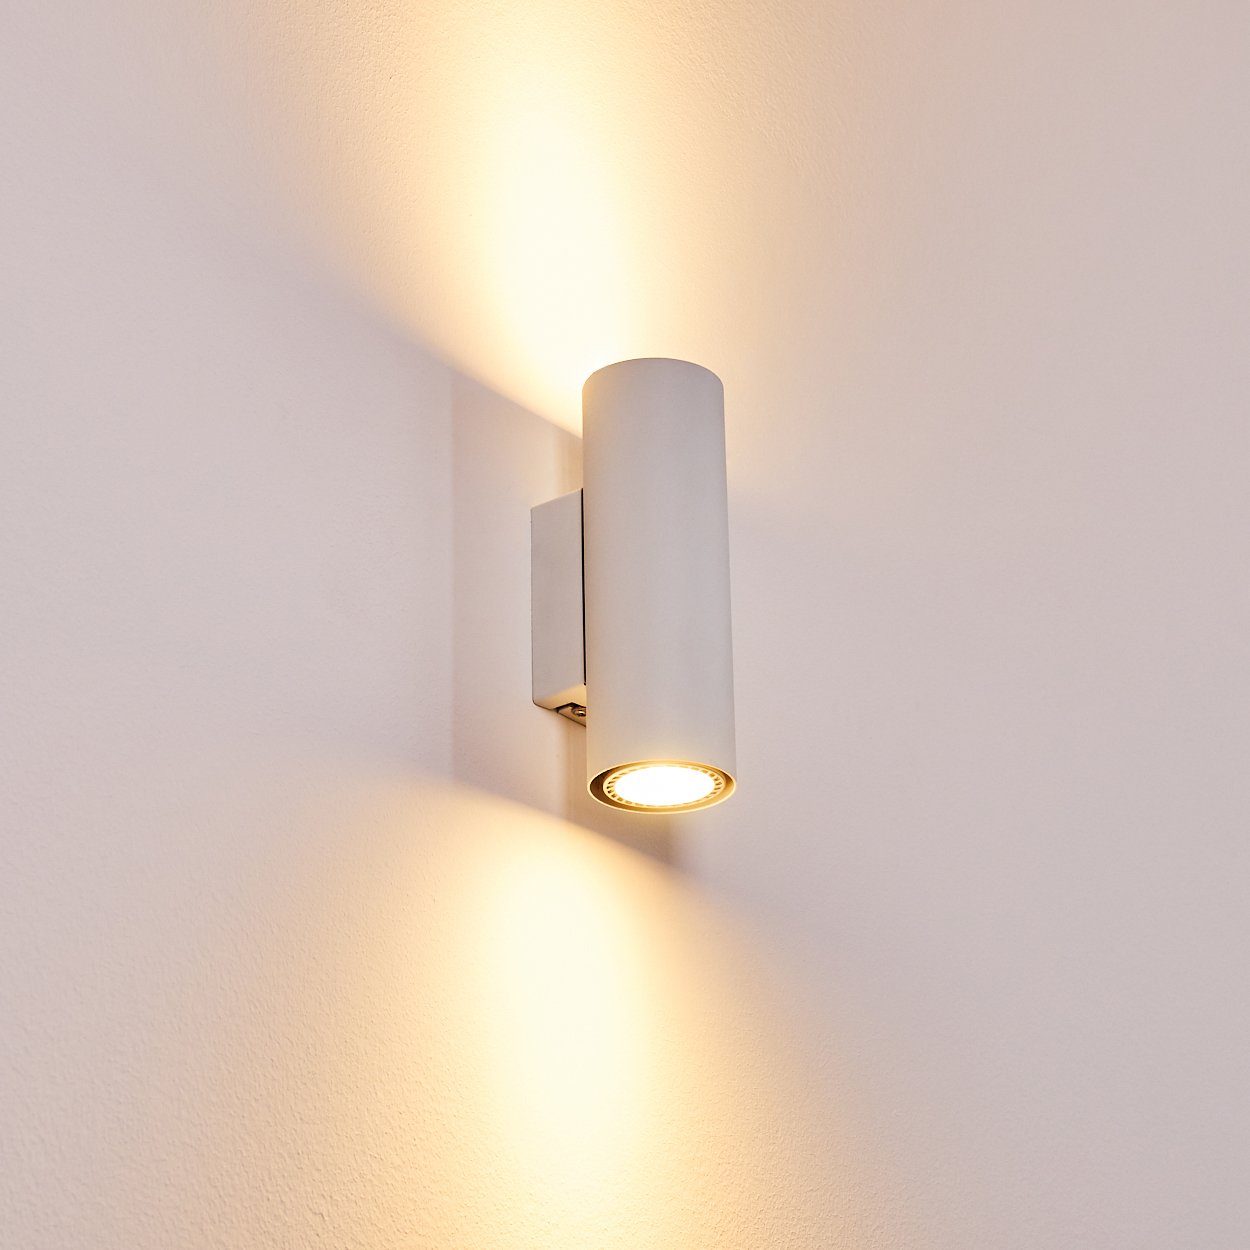 Design LED Up Down Wand Lampen Flur Dielen Leuchten Wohn Schlaf Raum Beleuchtung 